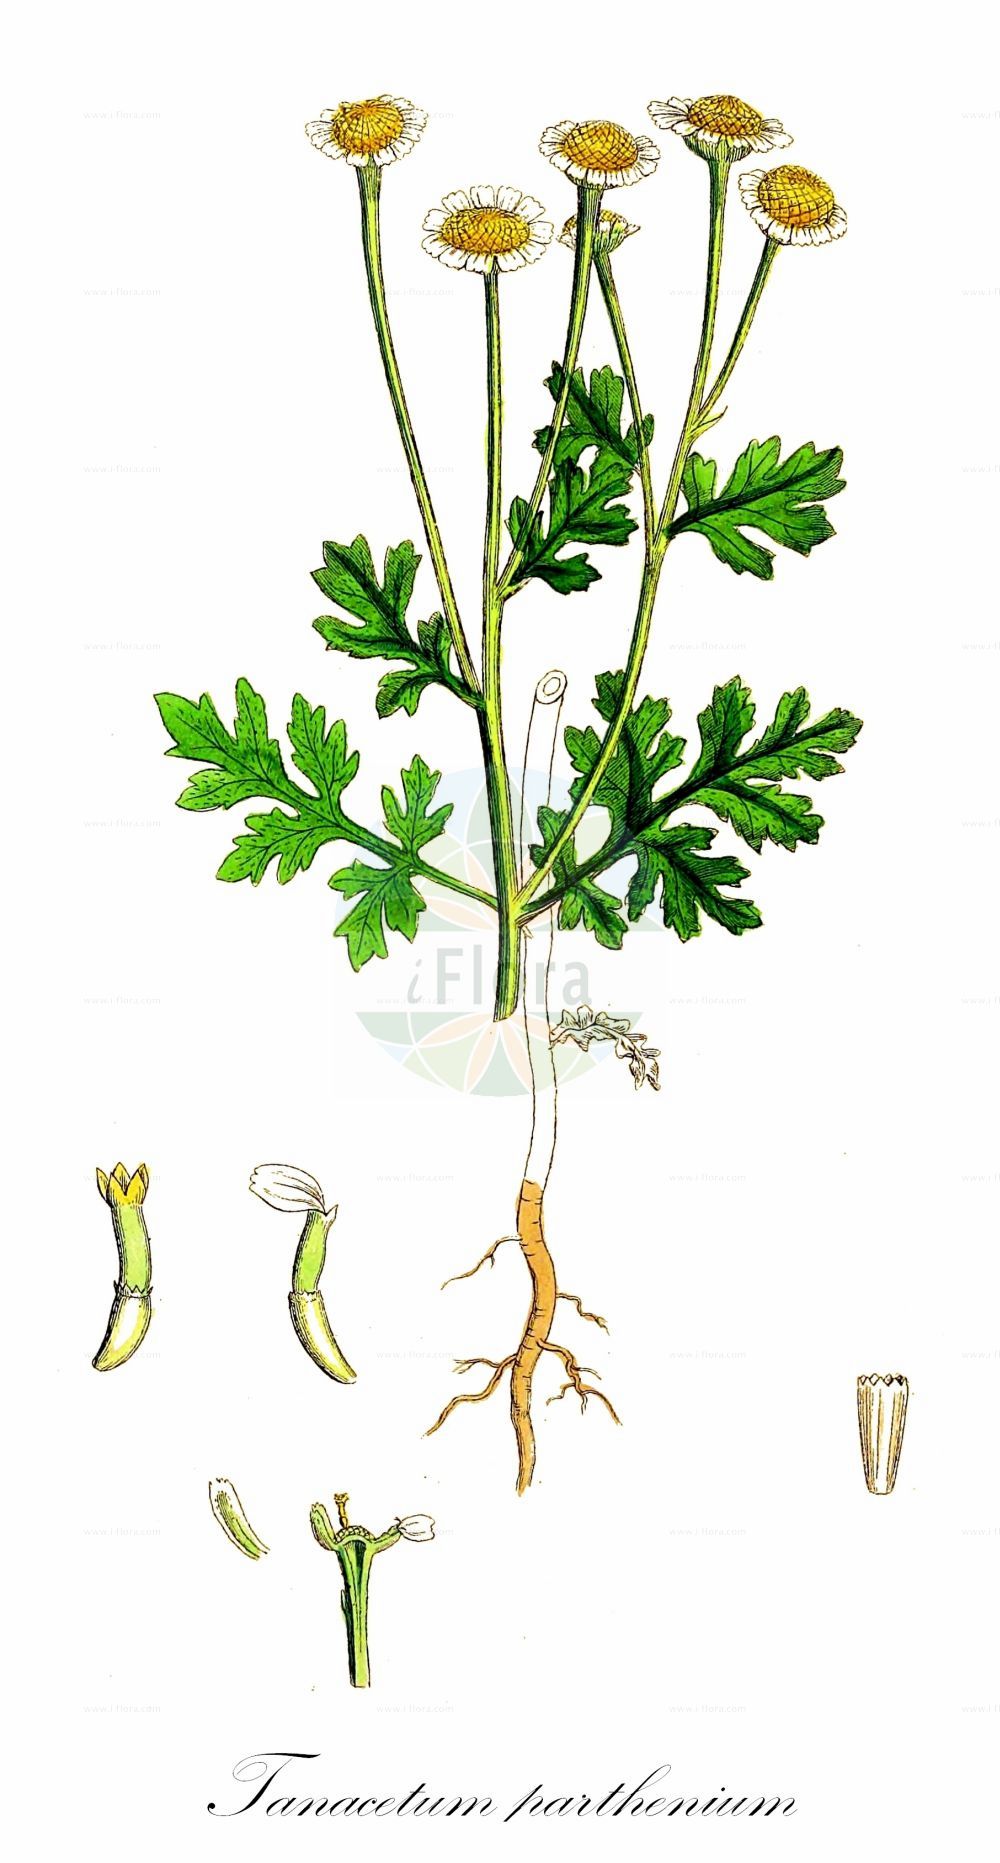 Historische Abbildung von Tanacetum parthenium (Mutterkraut - Feverfew). Das Bild zeigt Blatt, Bluete, Frucht und Same. ---- Historical Drawing of Tanacetum parthenium (Mutterkraut - Feverfew). The image is showing leaf, flower, fruit and seed.(Tanacetum parthenium,Mutterkraut,Feverfew,Chrysanthemum parthenium,Chrysanthemum praealtum,Leucanthemum parthenium,Matricaria parthenium,Pyrethrum buschianum,Pyrethrum demetrii,Pyrethrum divaricatum,Pyrethrum glanduliferum,Pyrethrum grossheimii,Pyrethrum parthenium,Pyrethrum sevanense,Tanacetum parthenium,Tanacetum parthenium var. praealtum,Mutterkraut,Falsche Kamille,Mutterkamille,Roemische Kamille,Feverfew,Tanacetum,Wucherblume,Tansy,Asteraceae,Korbblütengewächse,Daisy family,Blatt,Bluete,Frucht,Same,leaf,flower,fruit,seed,Sowerby (1790-1813))